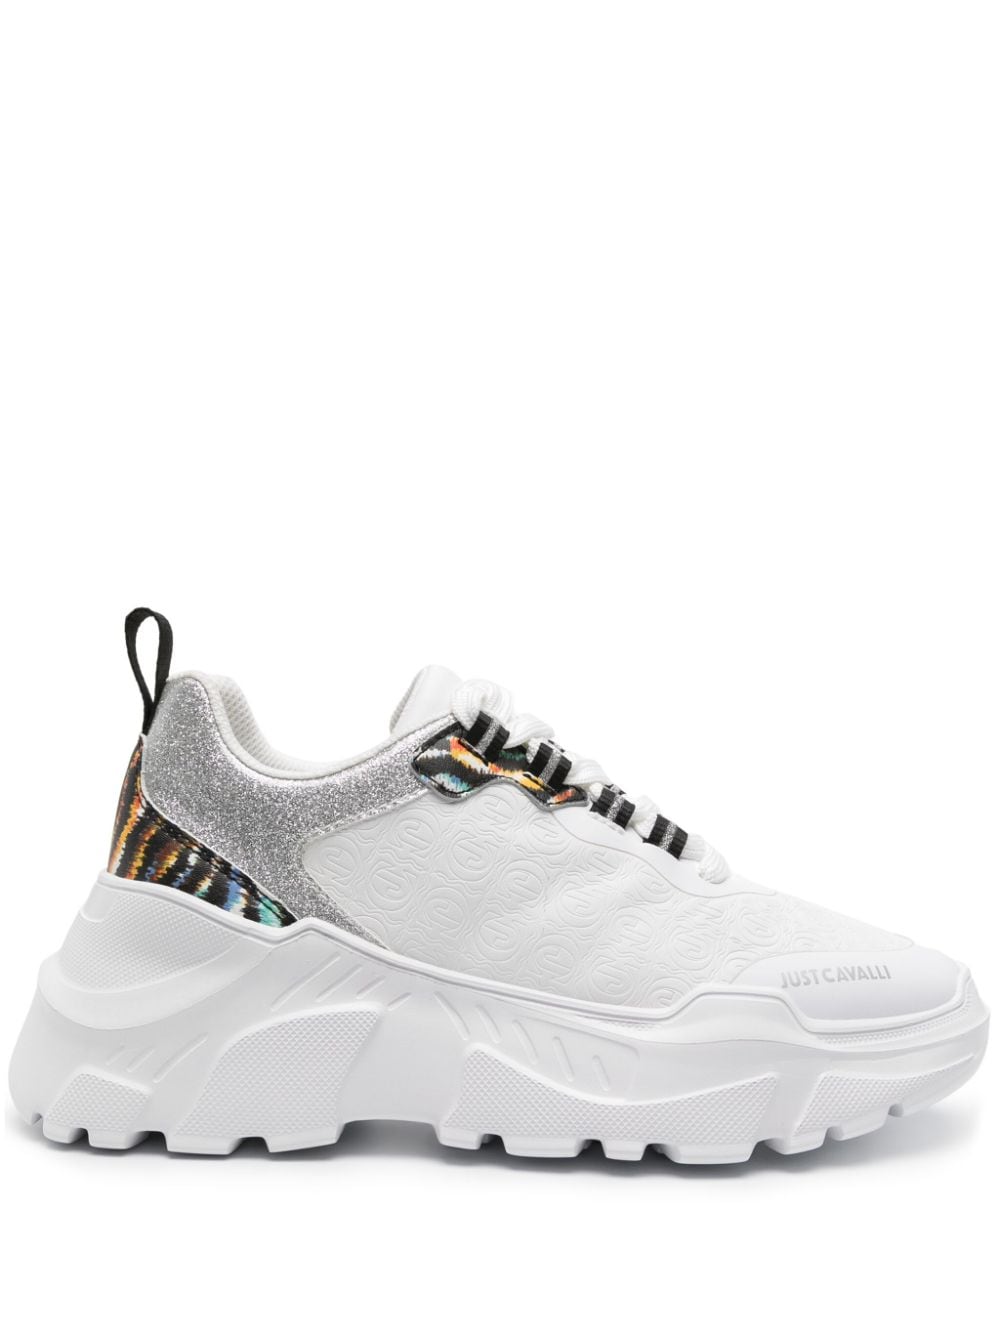 Just Cavalli Chunky Sneakers mit Monogramm - Weiß von Just Cavalli